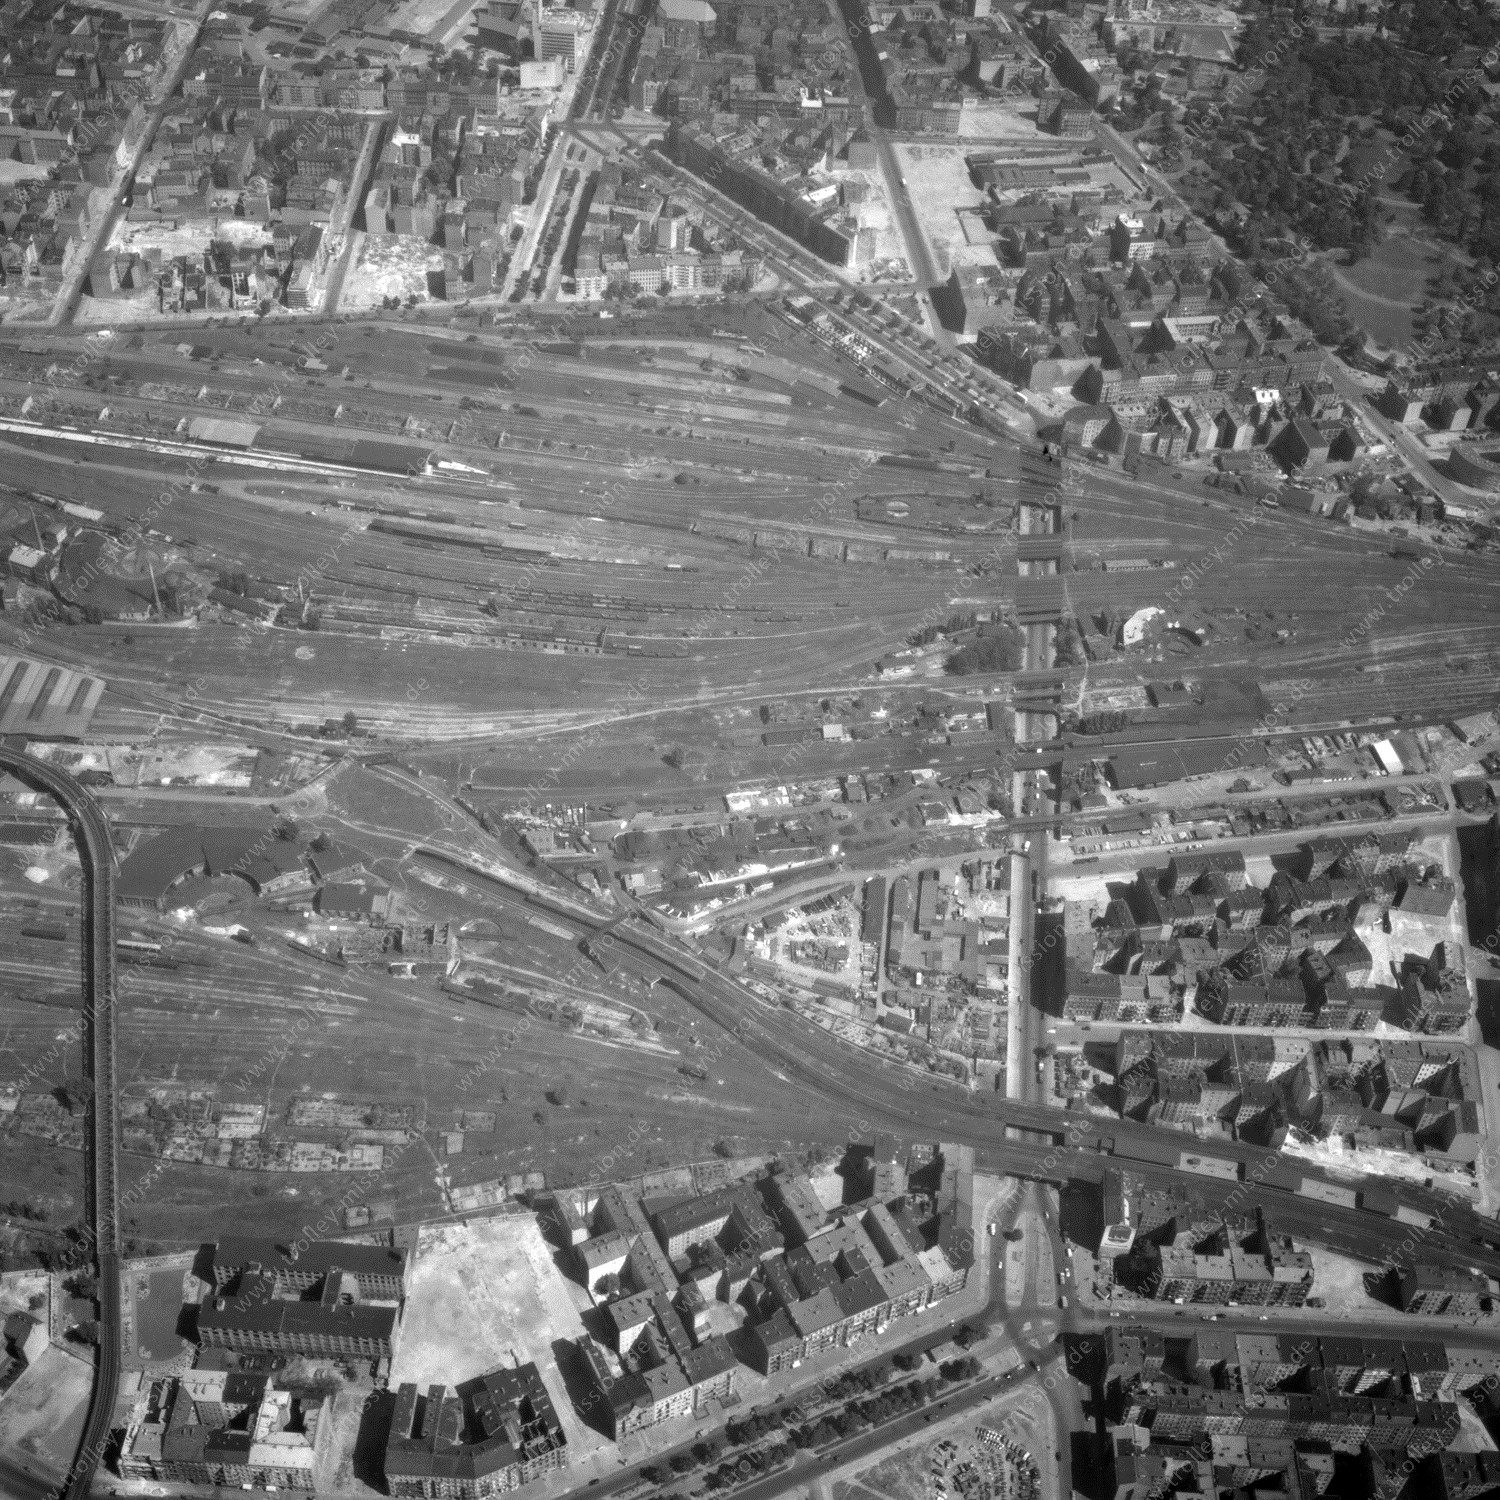 Alte Fotos und Luftbilder von Berlin - Luftbildaufnahme Nr. 04 - Historische Luftaufnahmen von West-Berlin aus dem Jahr 1954 - Flugstrecke Hotel